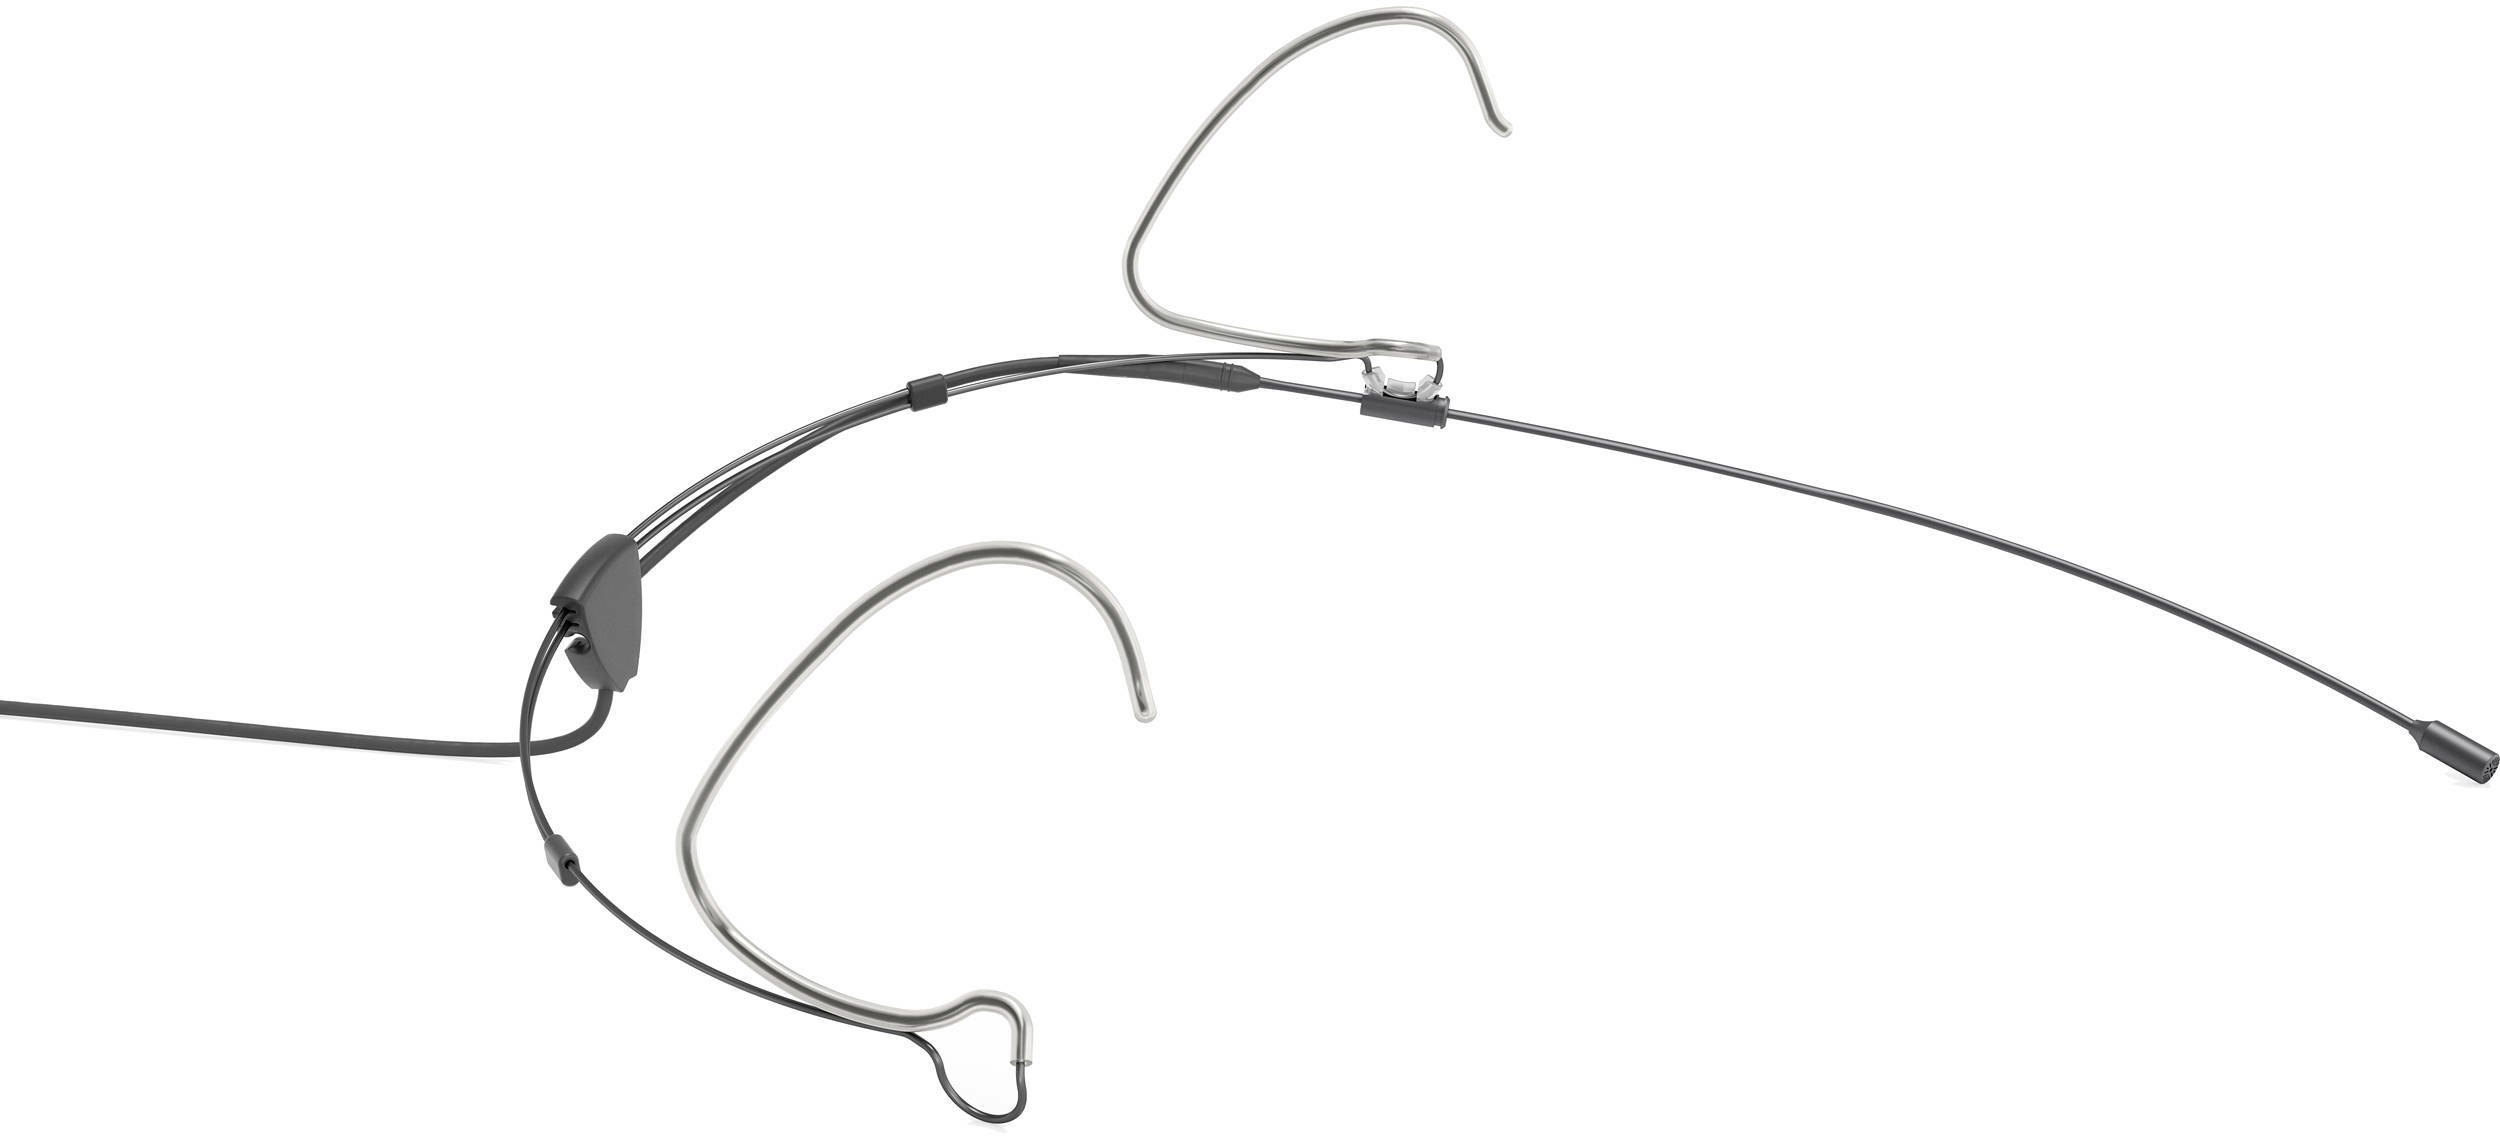 Dpa 6066(black) - Headset-Mikrofon - Main picture